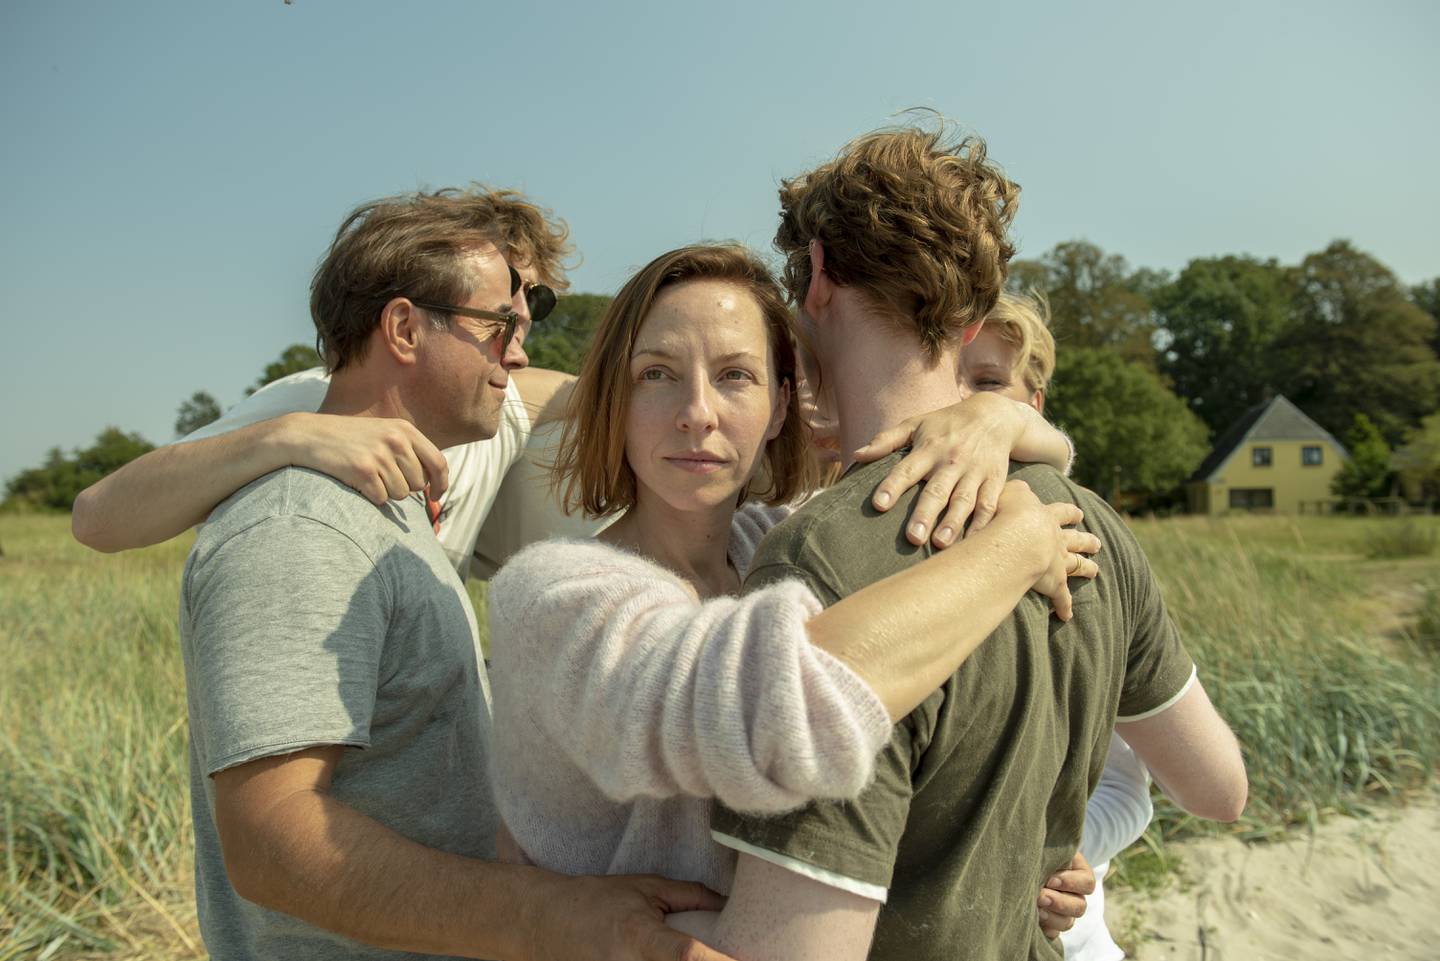 Sabine (Katharina Schüttler) og hennes tyske familie ryker uklar med sine danske venner når det skjer en ulykke på deres felles øyparadis Okseøyene, i den tyskdanske thrilleren «Under overflata».